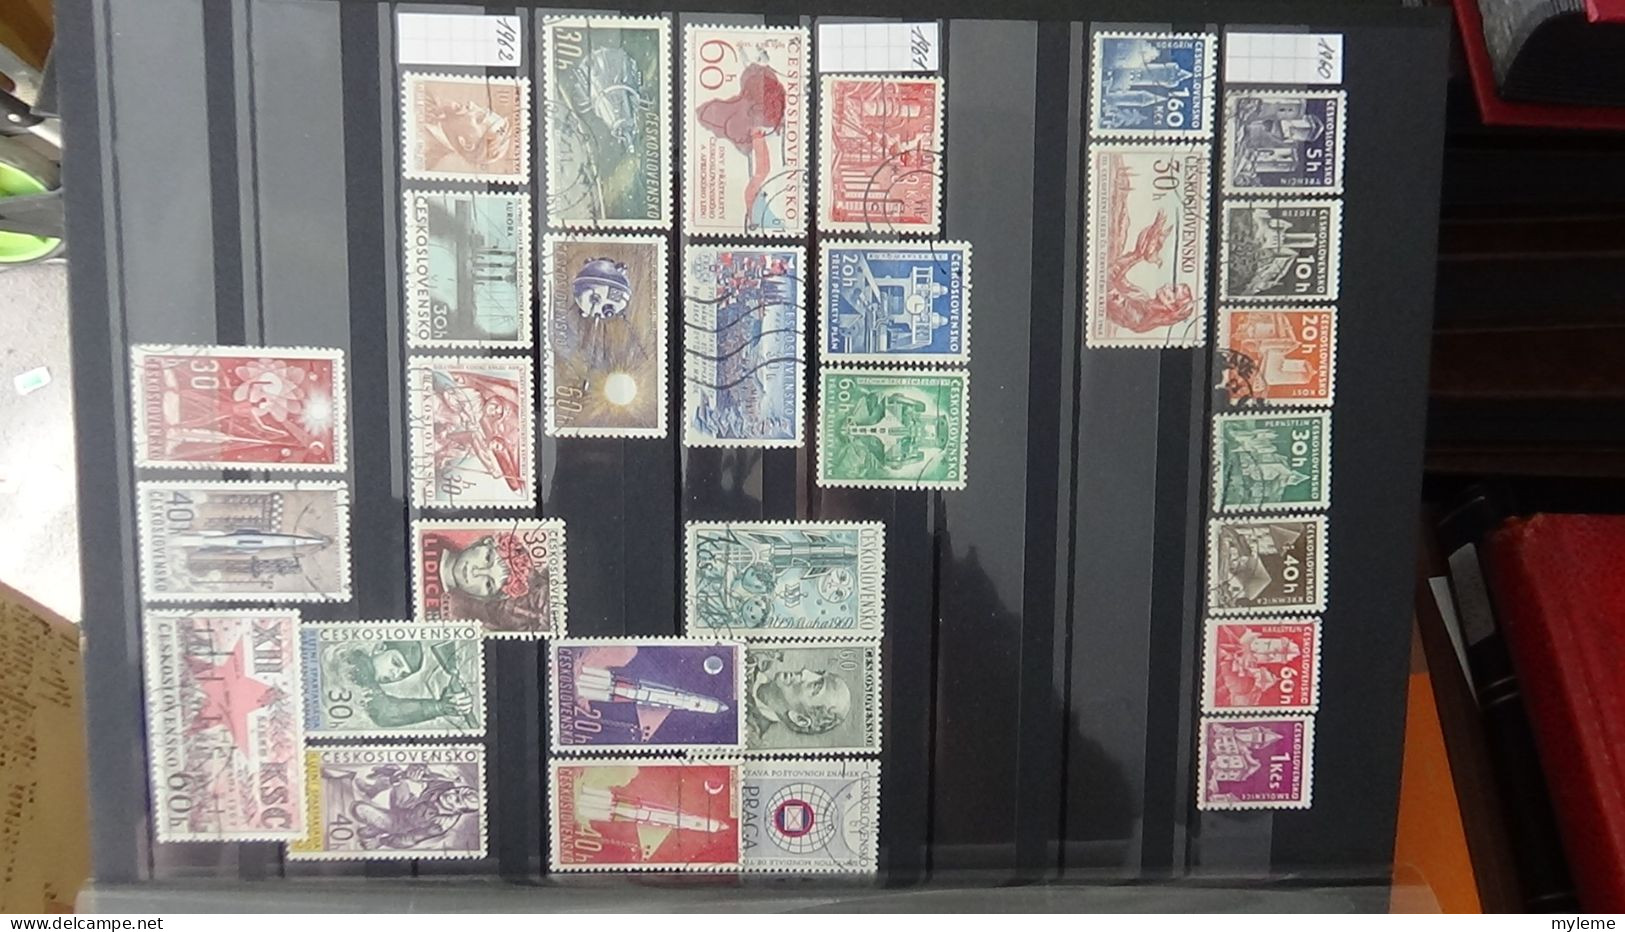 BF26 Ensemble de timbres de divers pays + Mouchons N° 116 + 117 + 118 **. Cote 985 euros